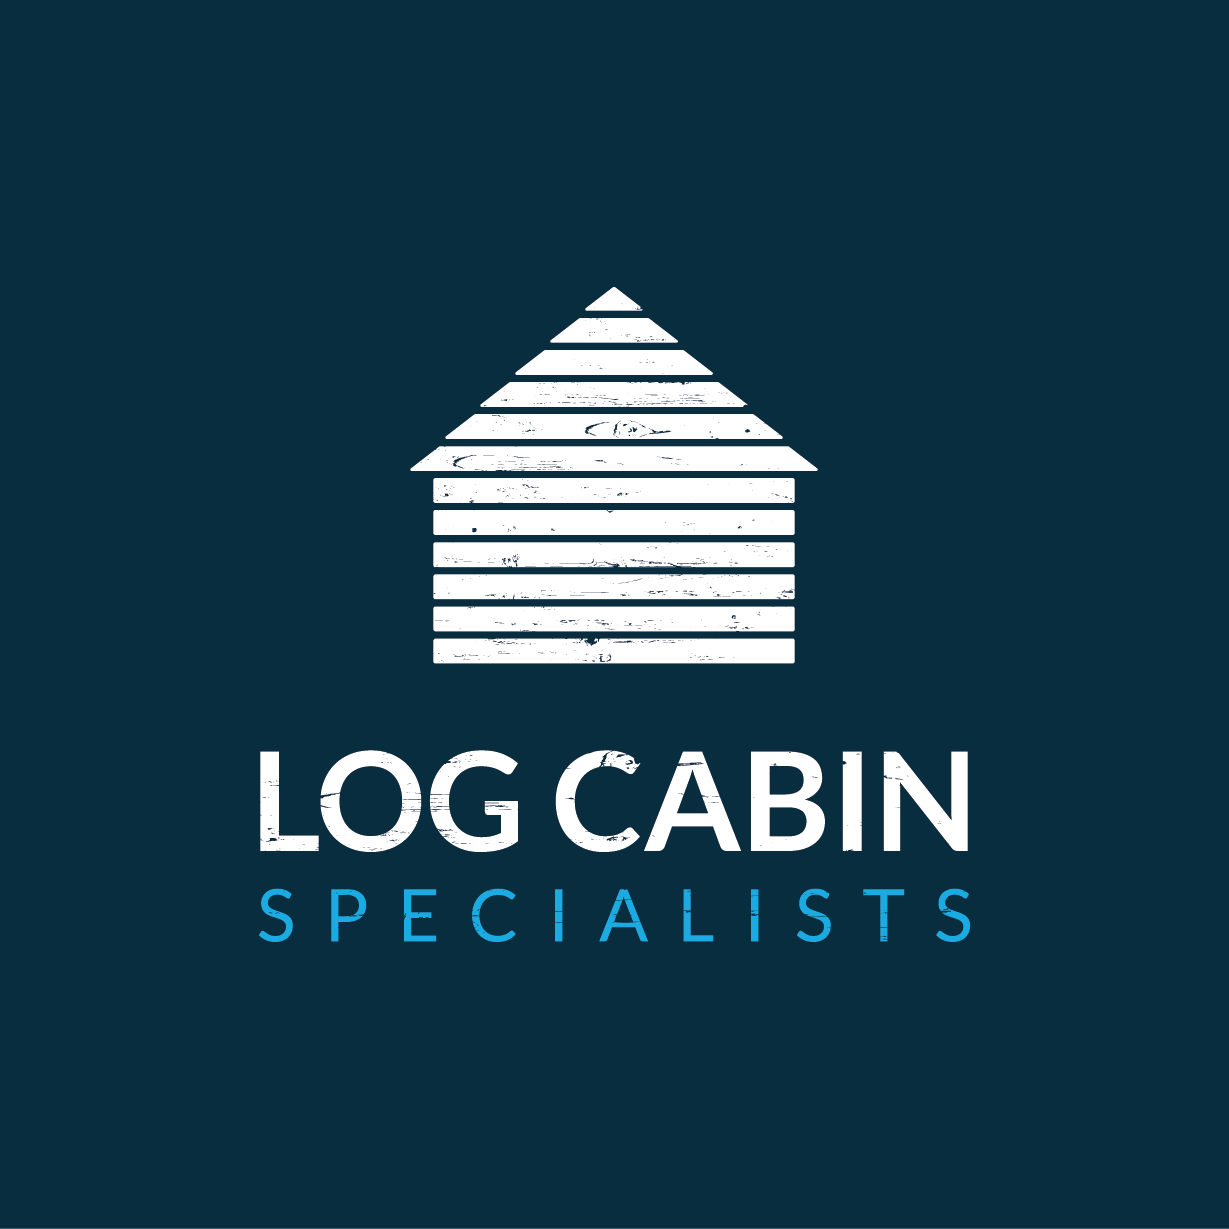 Garden Log Cabins